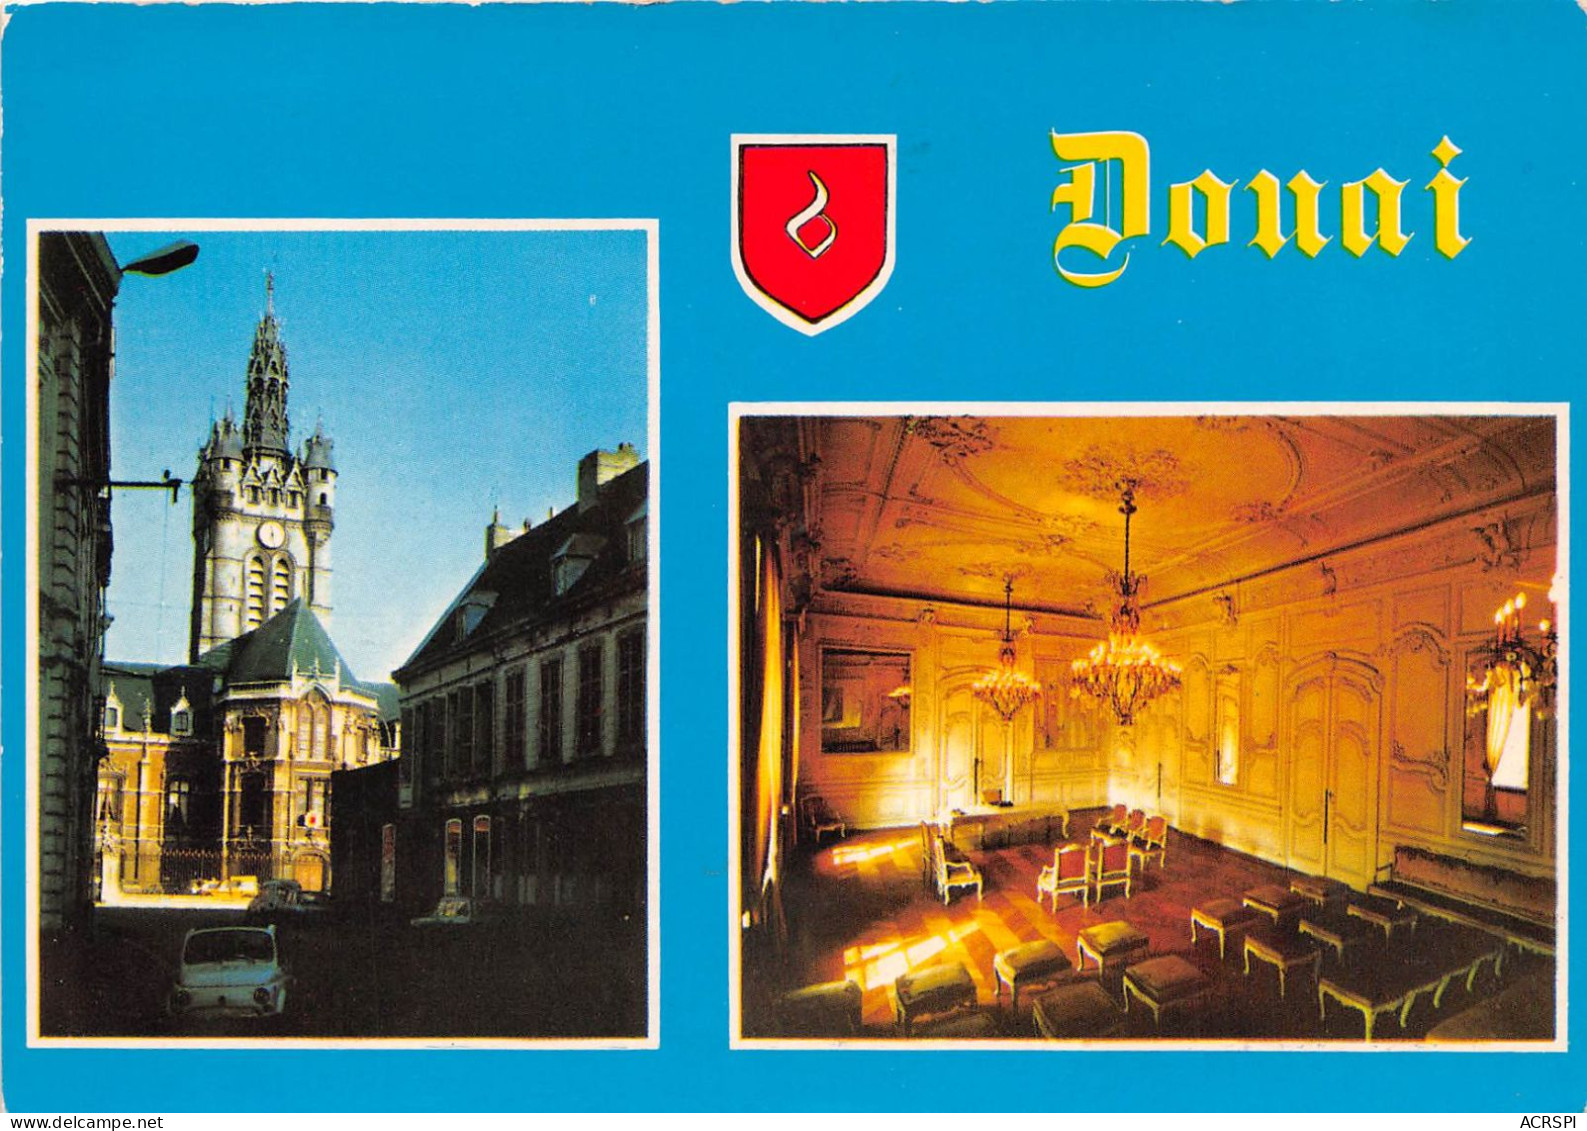 DOUAI Le Beffroi La Salle Des Mariages 23(scan Recto-verso) MA960 - Douai